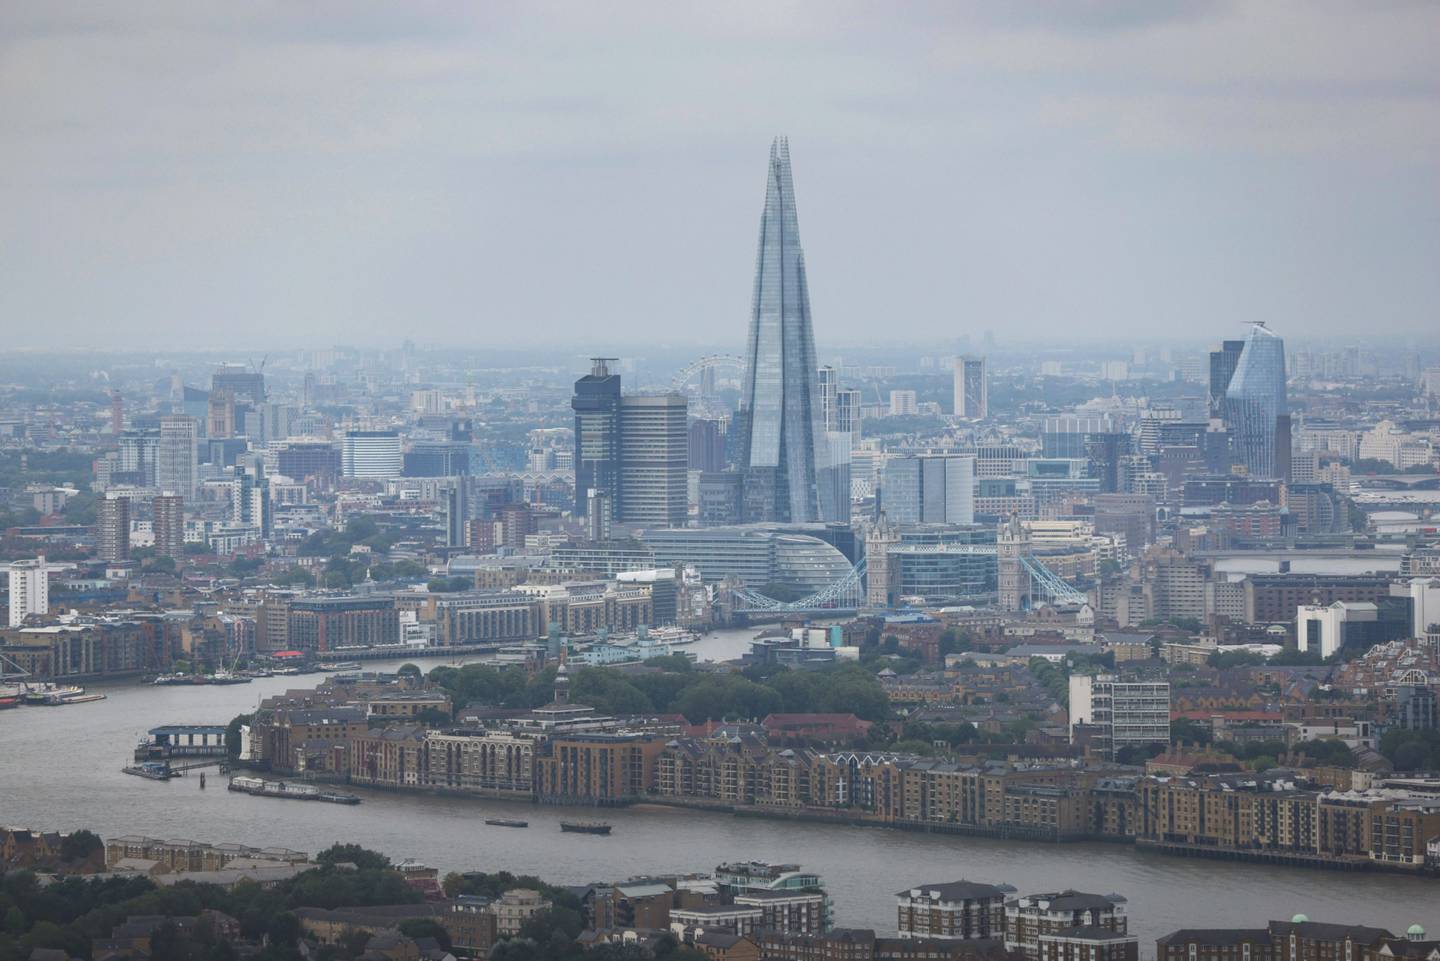 Vista panorámica de la ciudad de Londres.